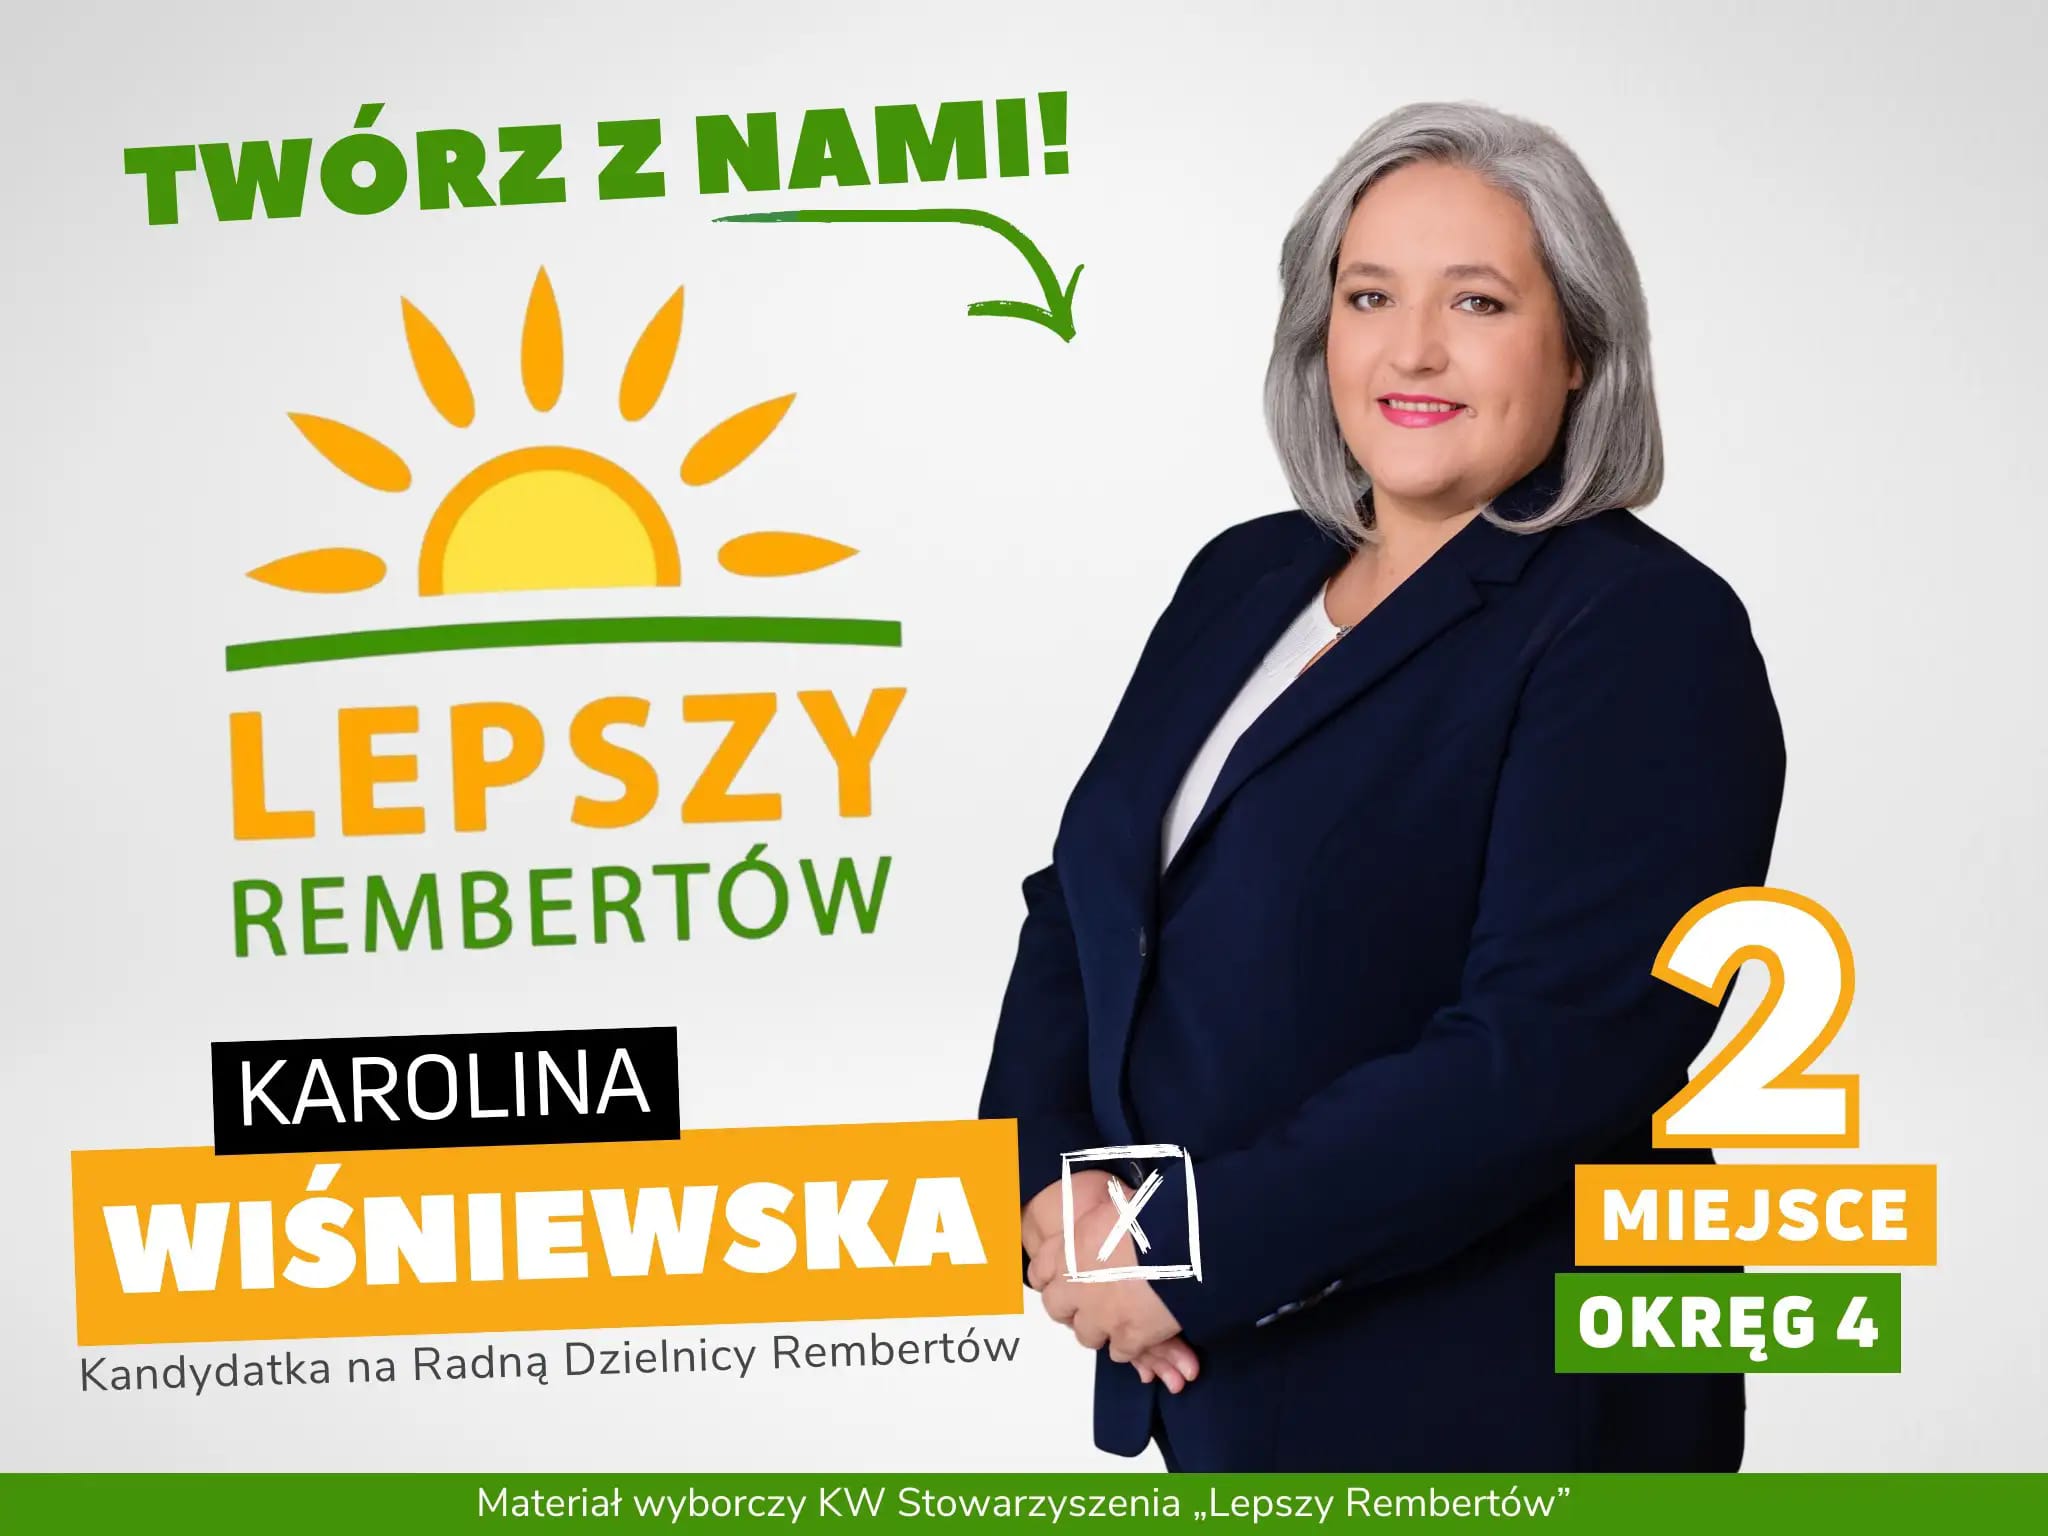 Karolina Wiśniewska Okręg 4 miejsce 2